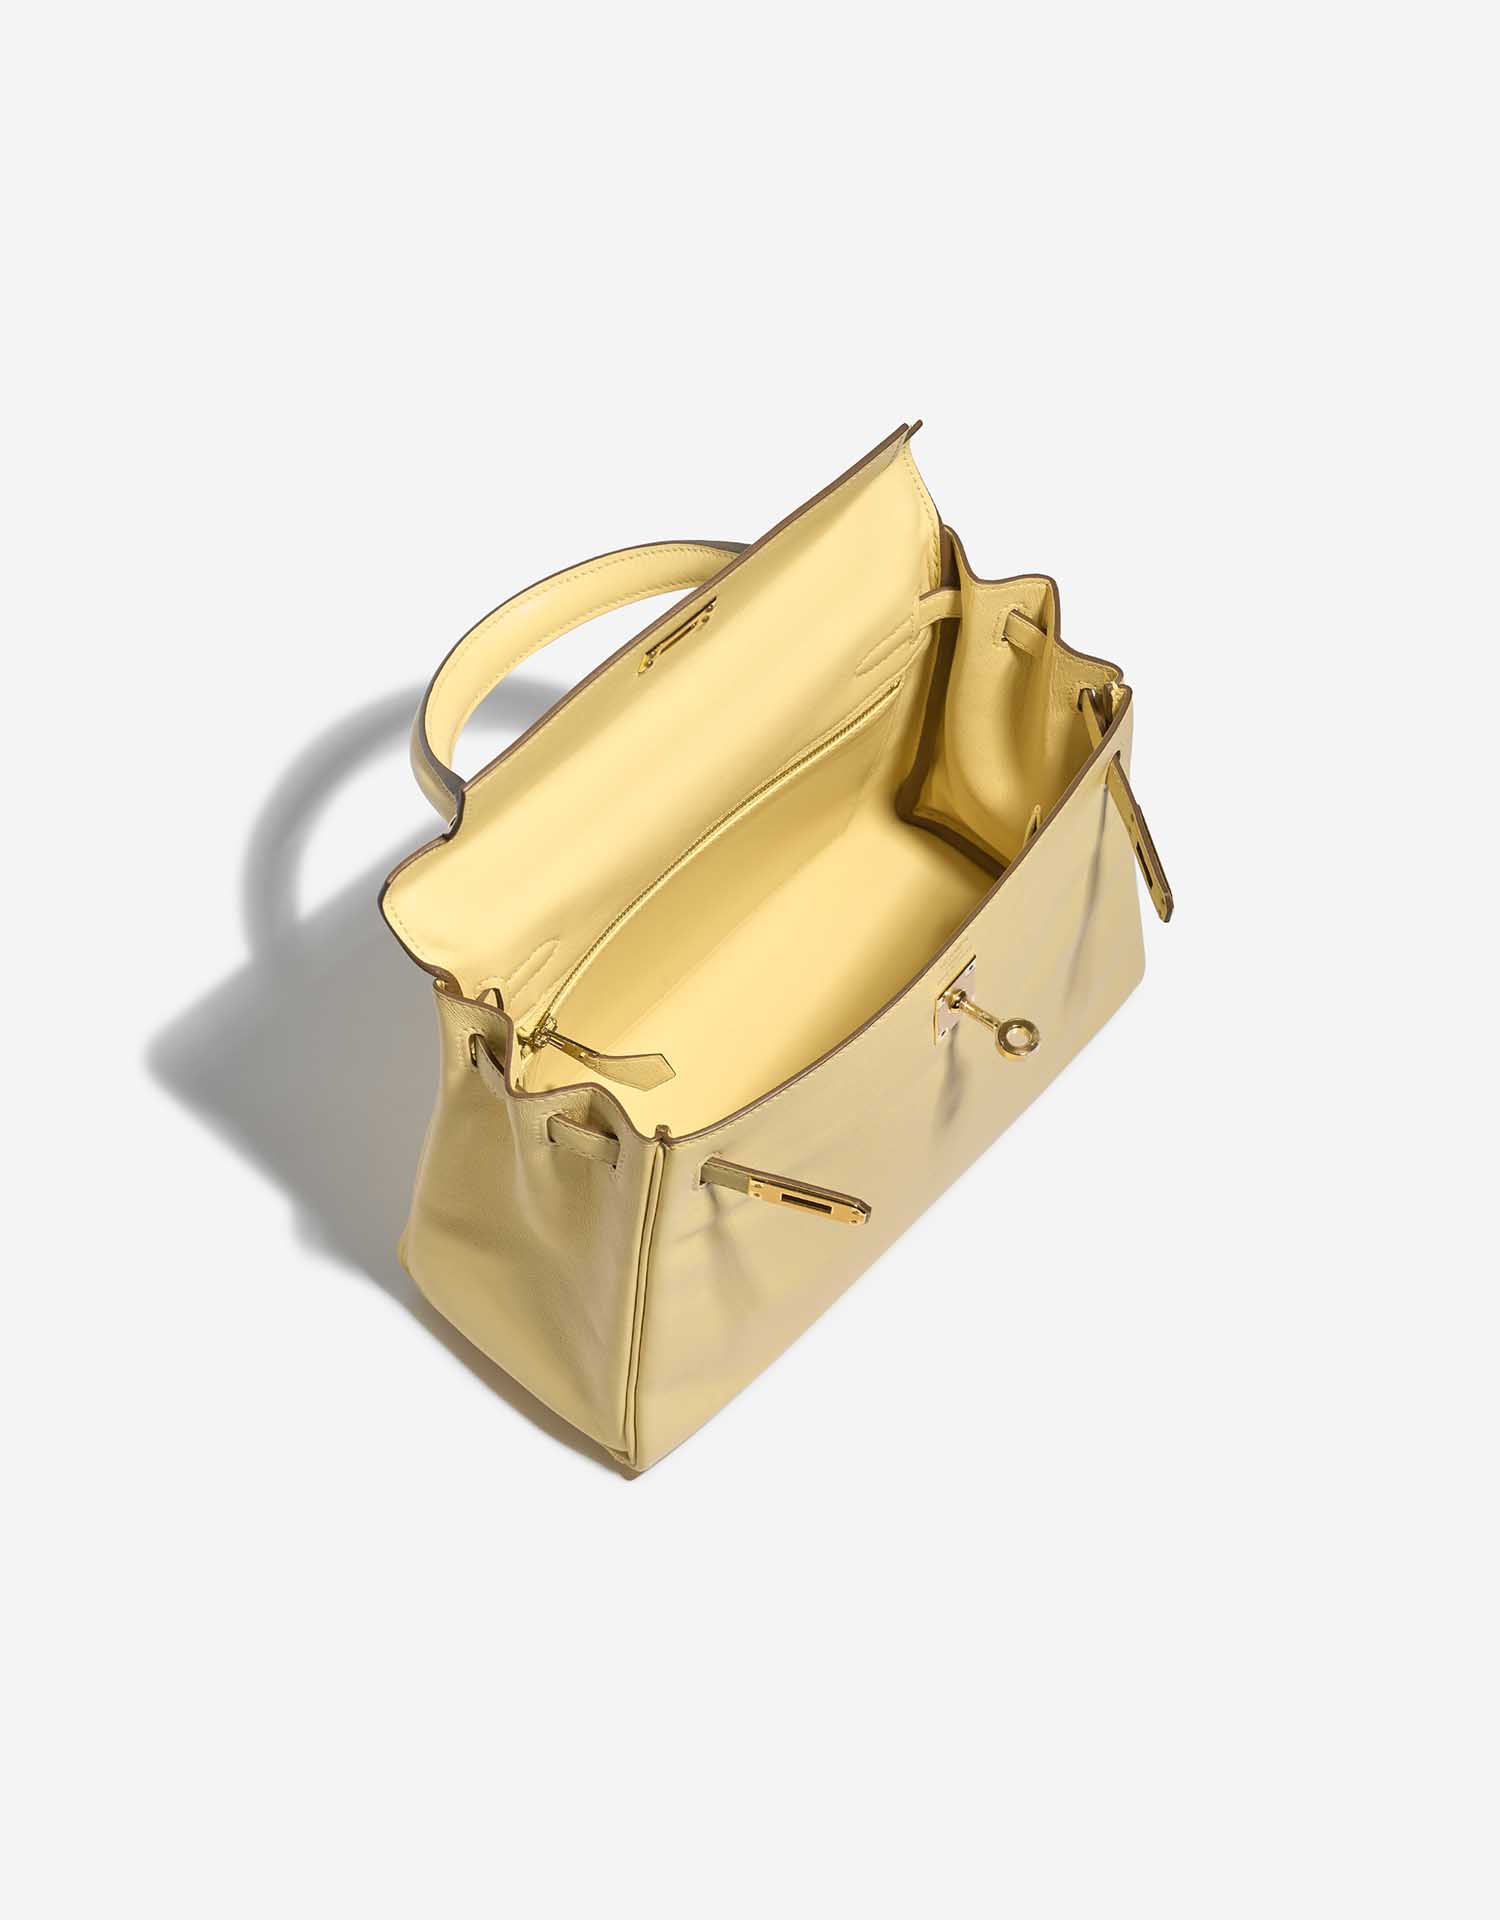 Pre-owned Hermès Tasche Kelly 25 Swift Jaune Poussin Yellow Inside | Verkaufen Sie Ihre Designer-Tasche auf Saclab.com